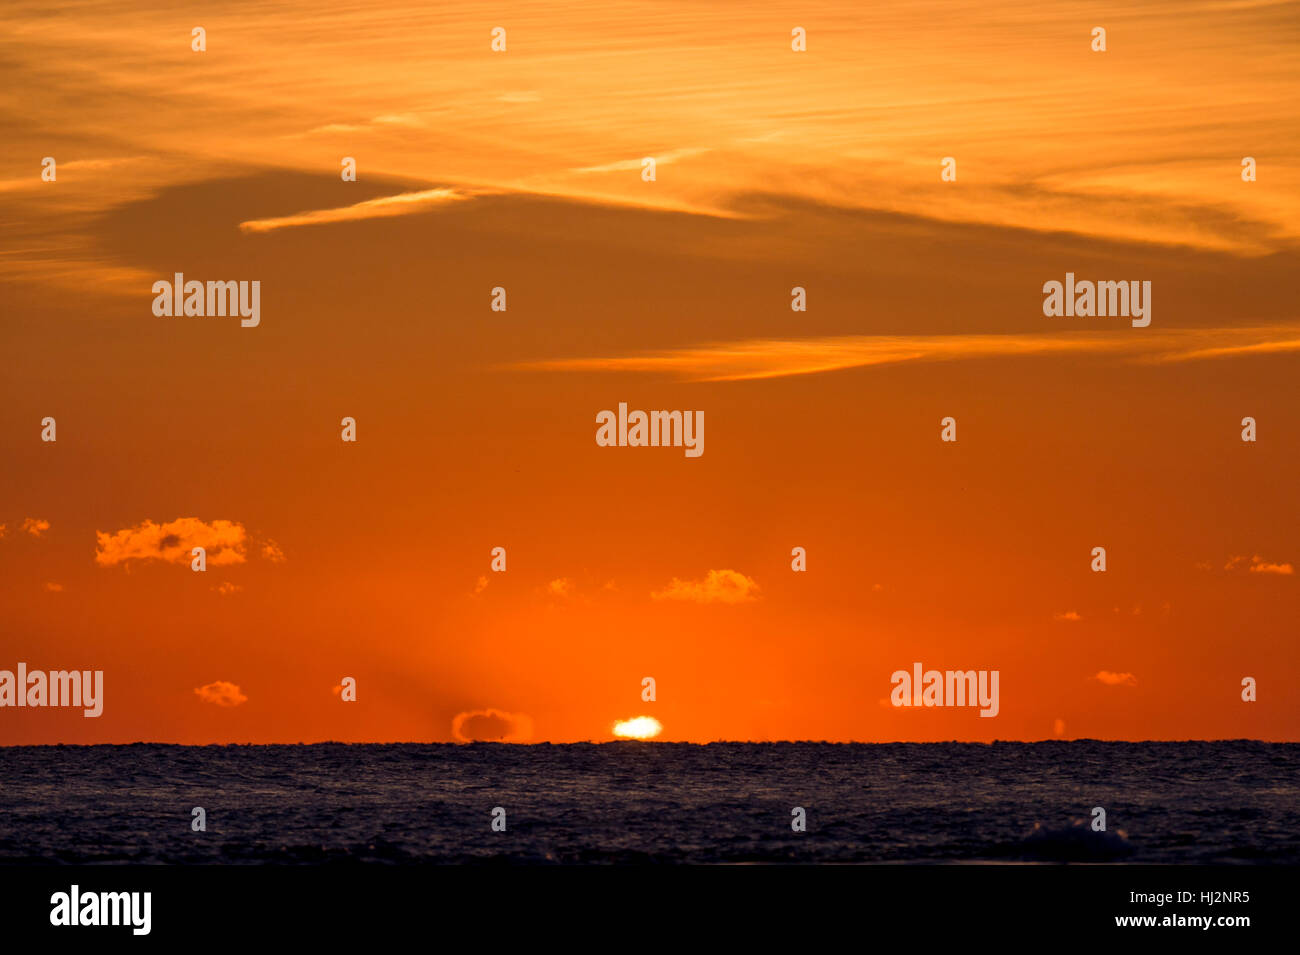 Le soleil peut à peine être vu lorsqu'il s'ouvre sur l'océan avec de minces nuages dans le ciel orange vif. Banque D'Images